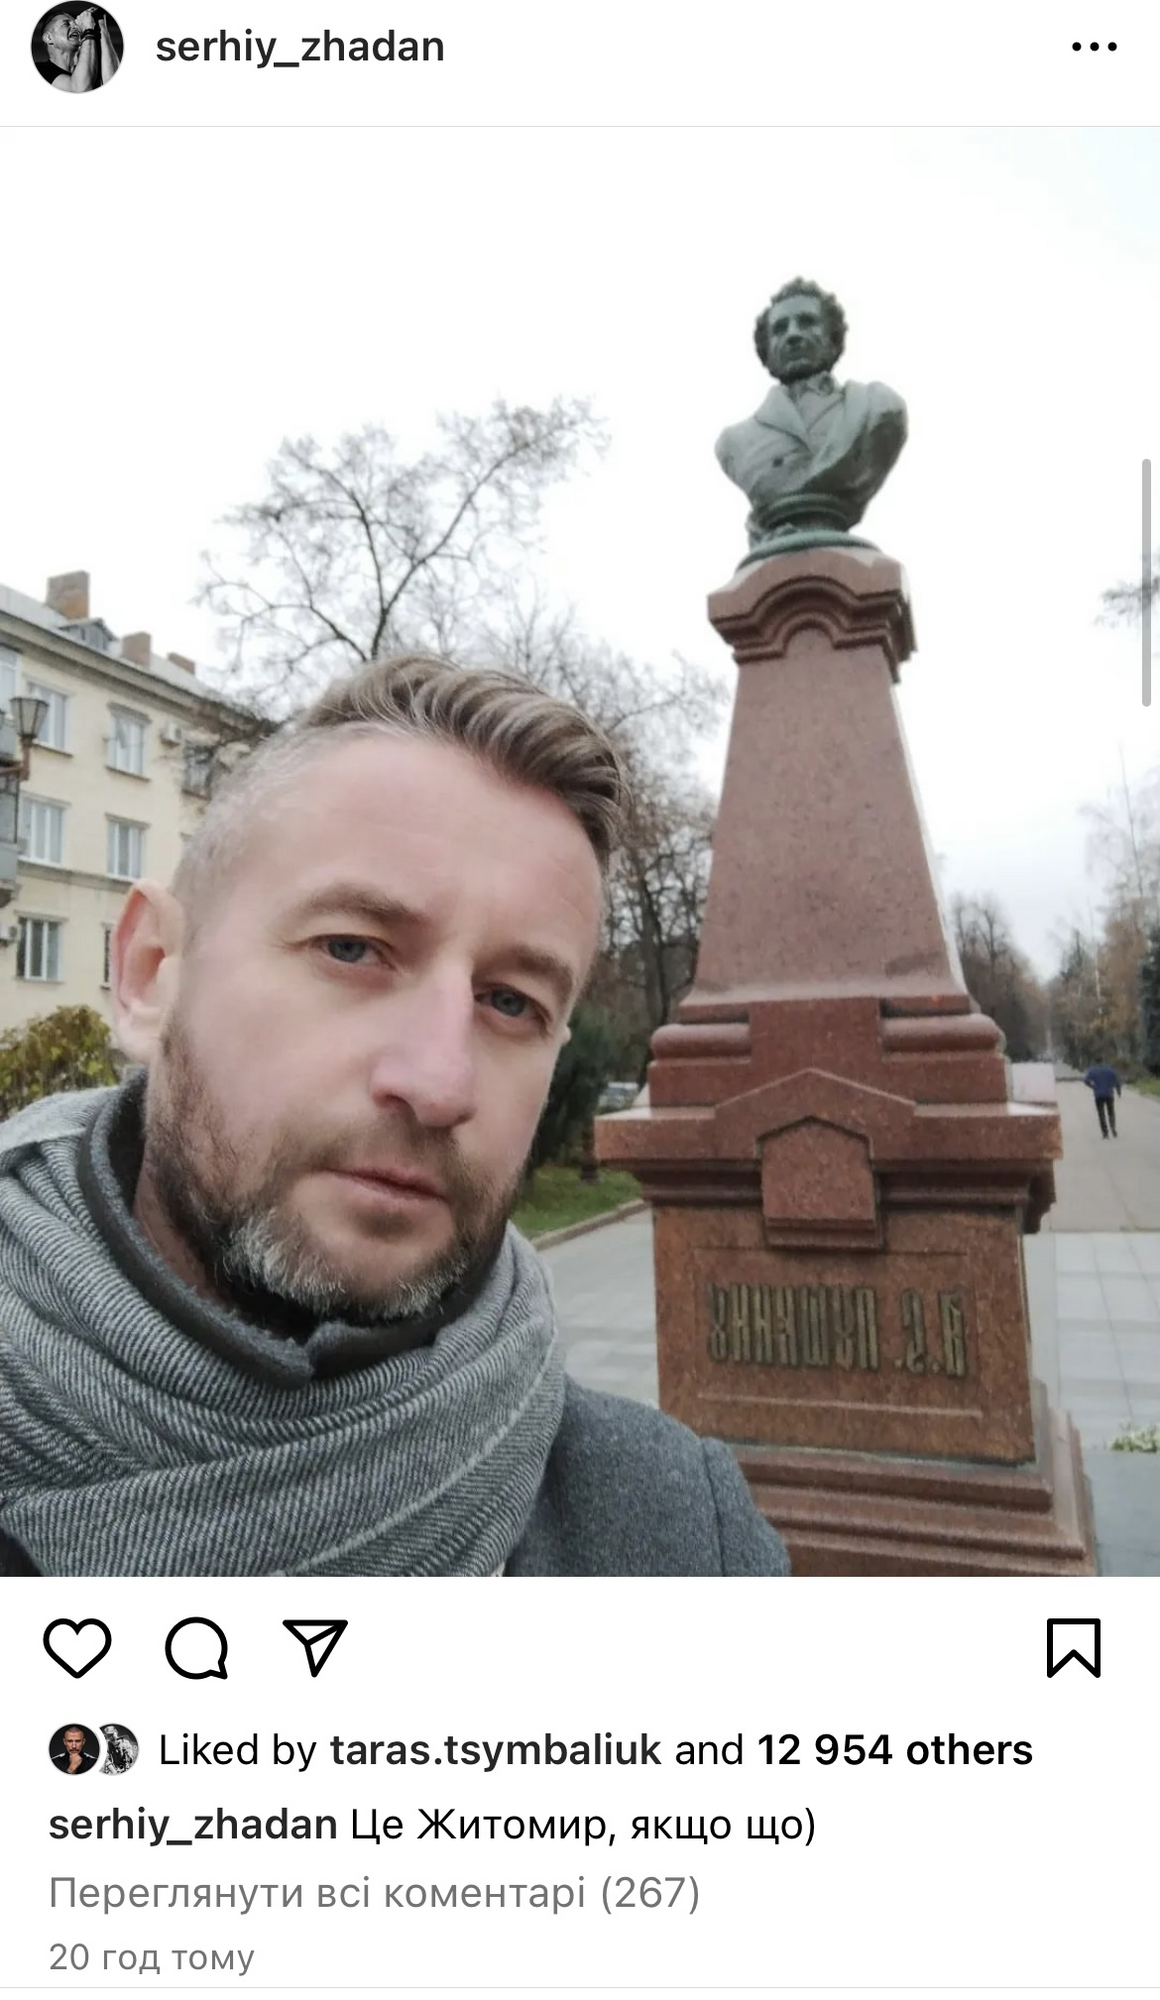 "Не имею к этому никакого отношения": Жадан сфотографировался на фоне памятника Пушкину в Житомире, после чего его снесли